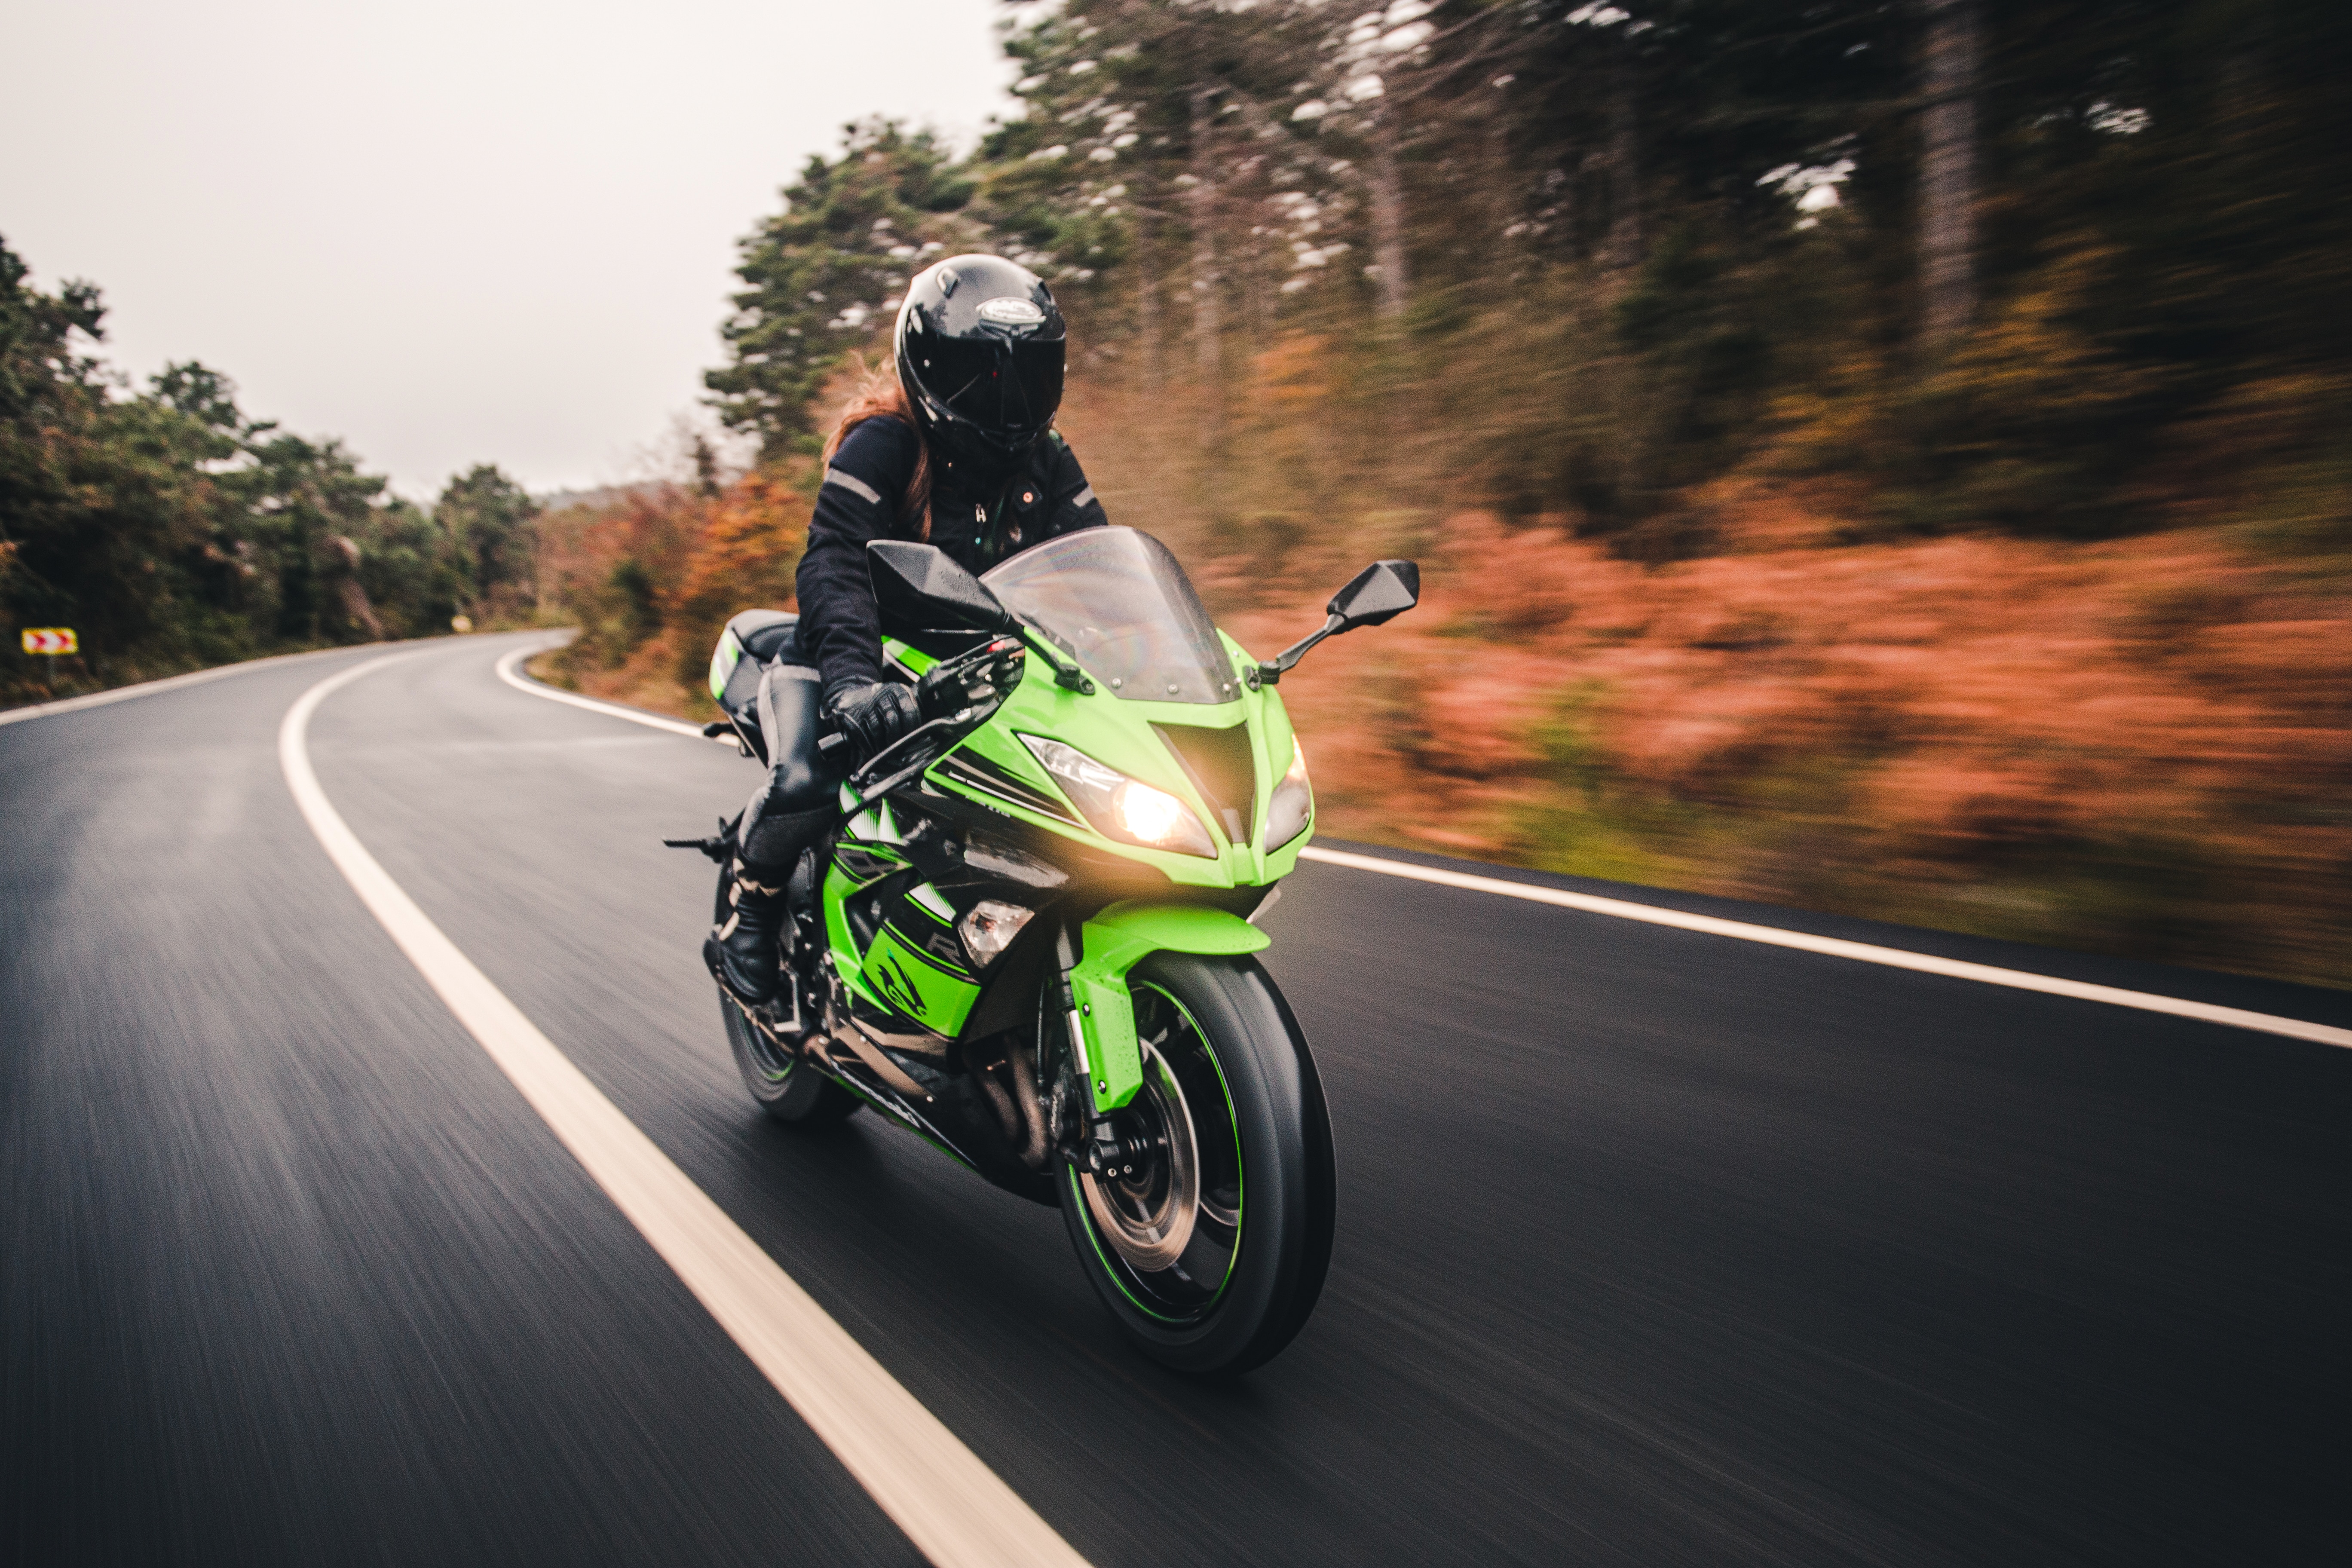 Neon grünes Motorrad fährt auf einer Landstraße